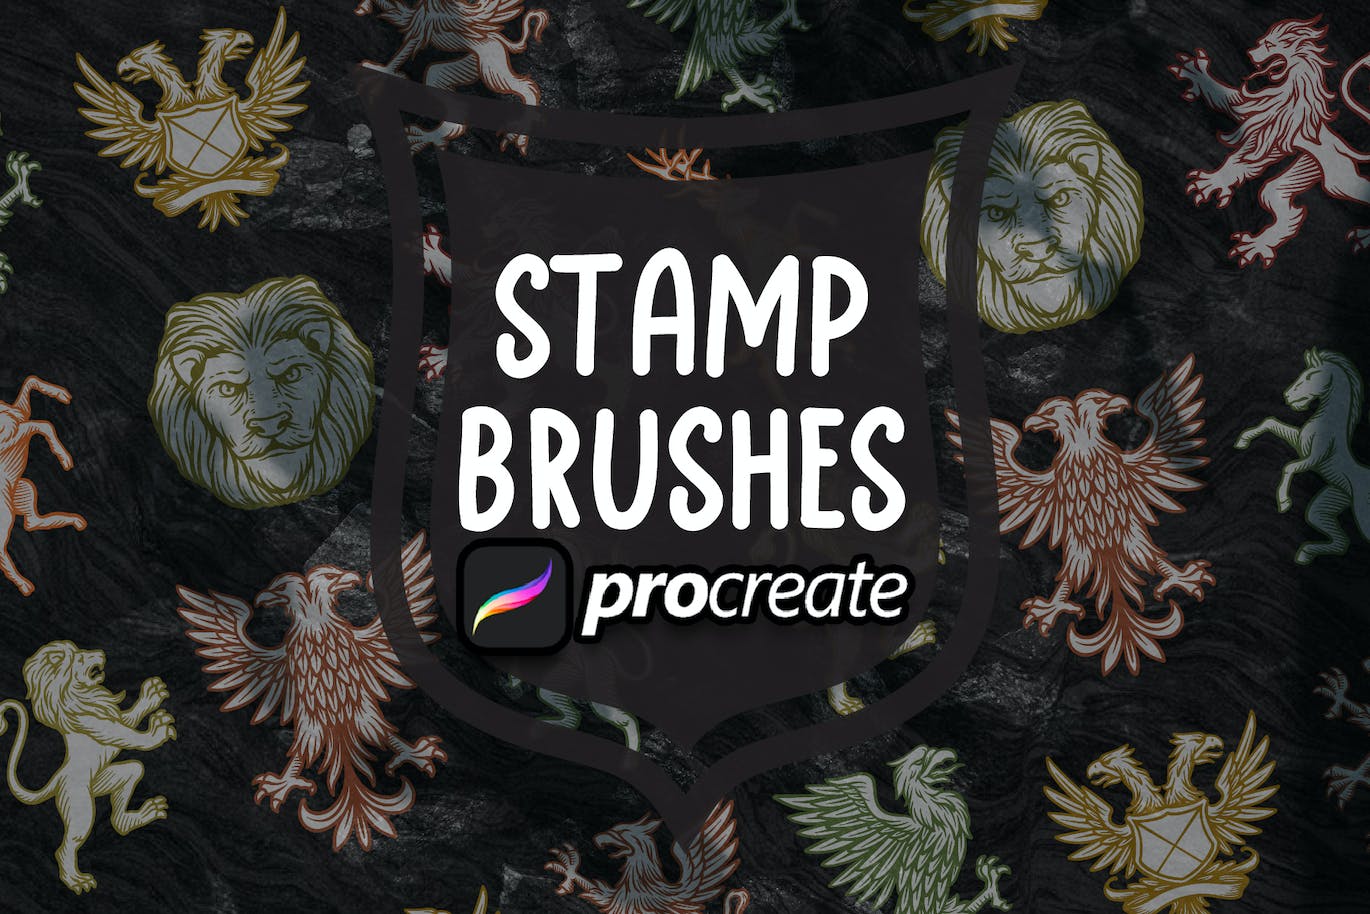 中世纪符号纹章Procreate印章绘画笔刷素材 Medieval Symbol Heraldic Brush Stamp Procreate 笔刷资源 第2张